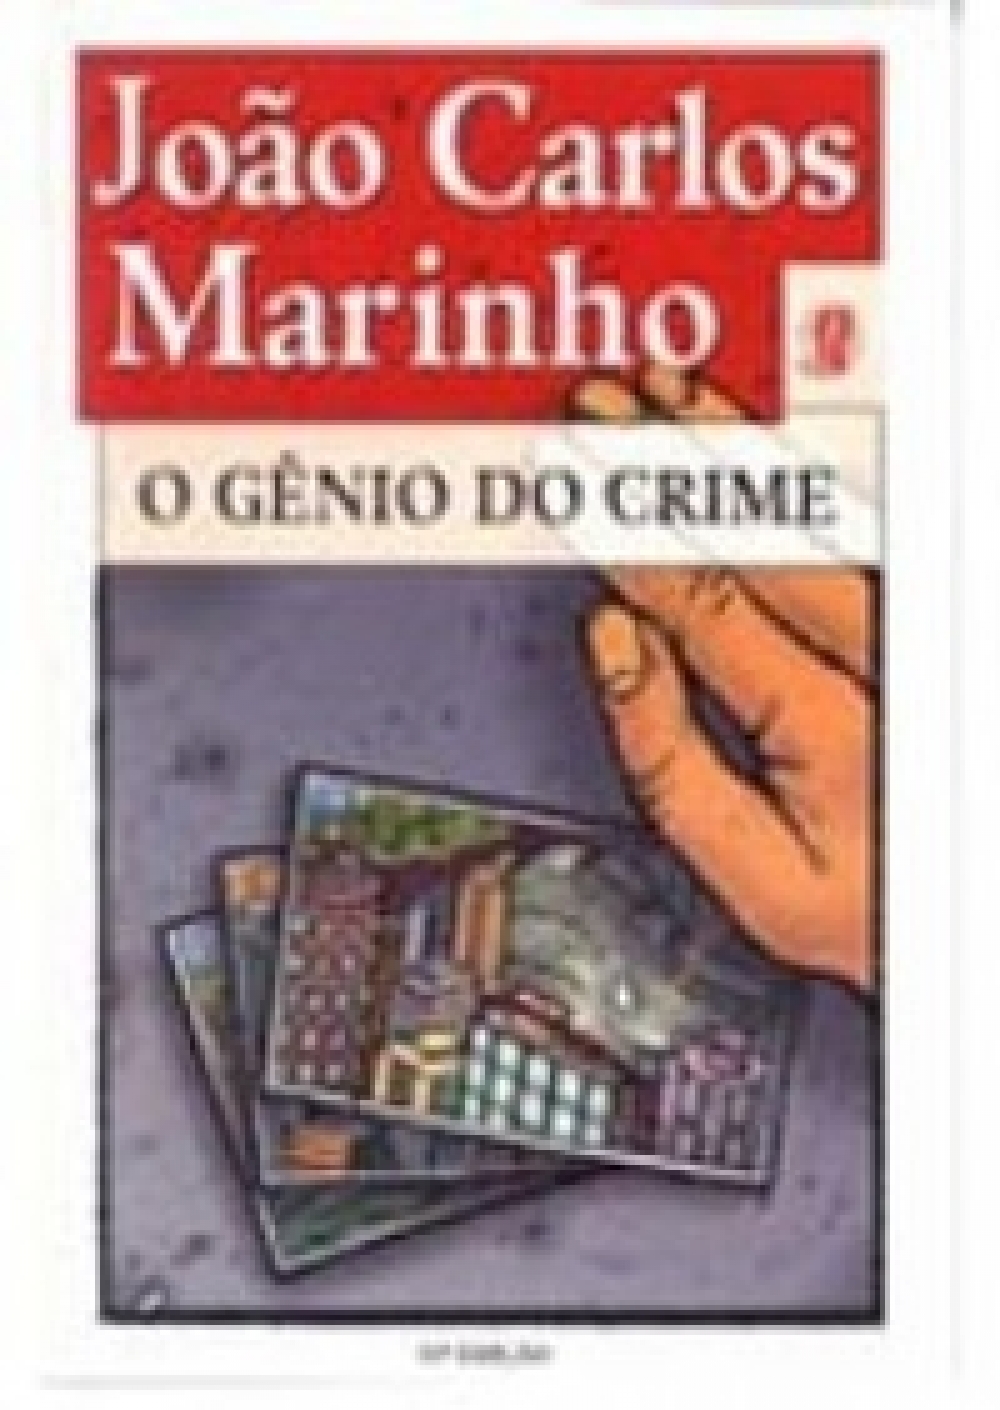 O gênio do crime